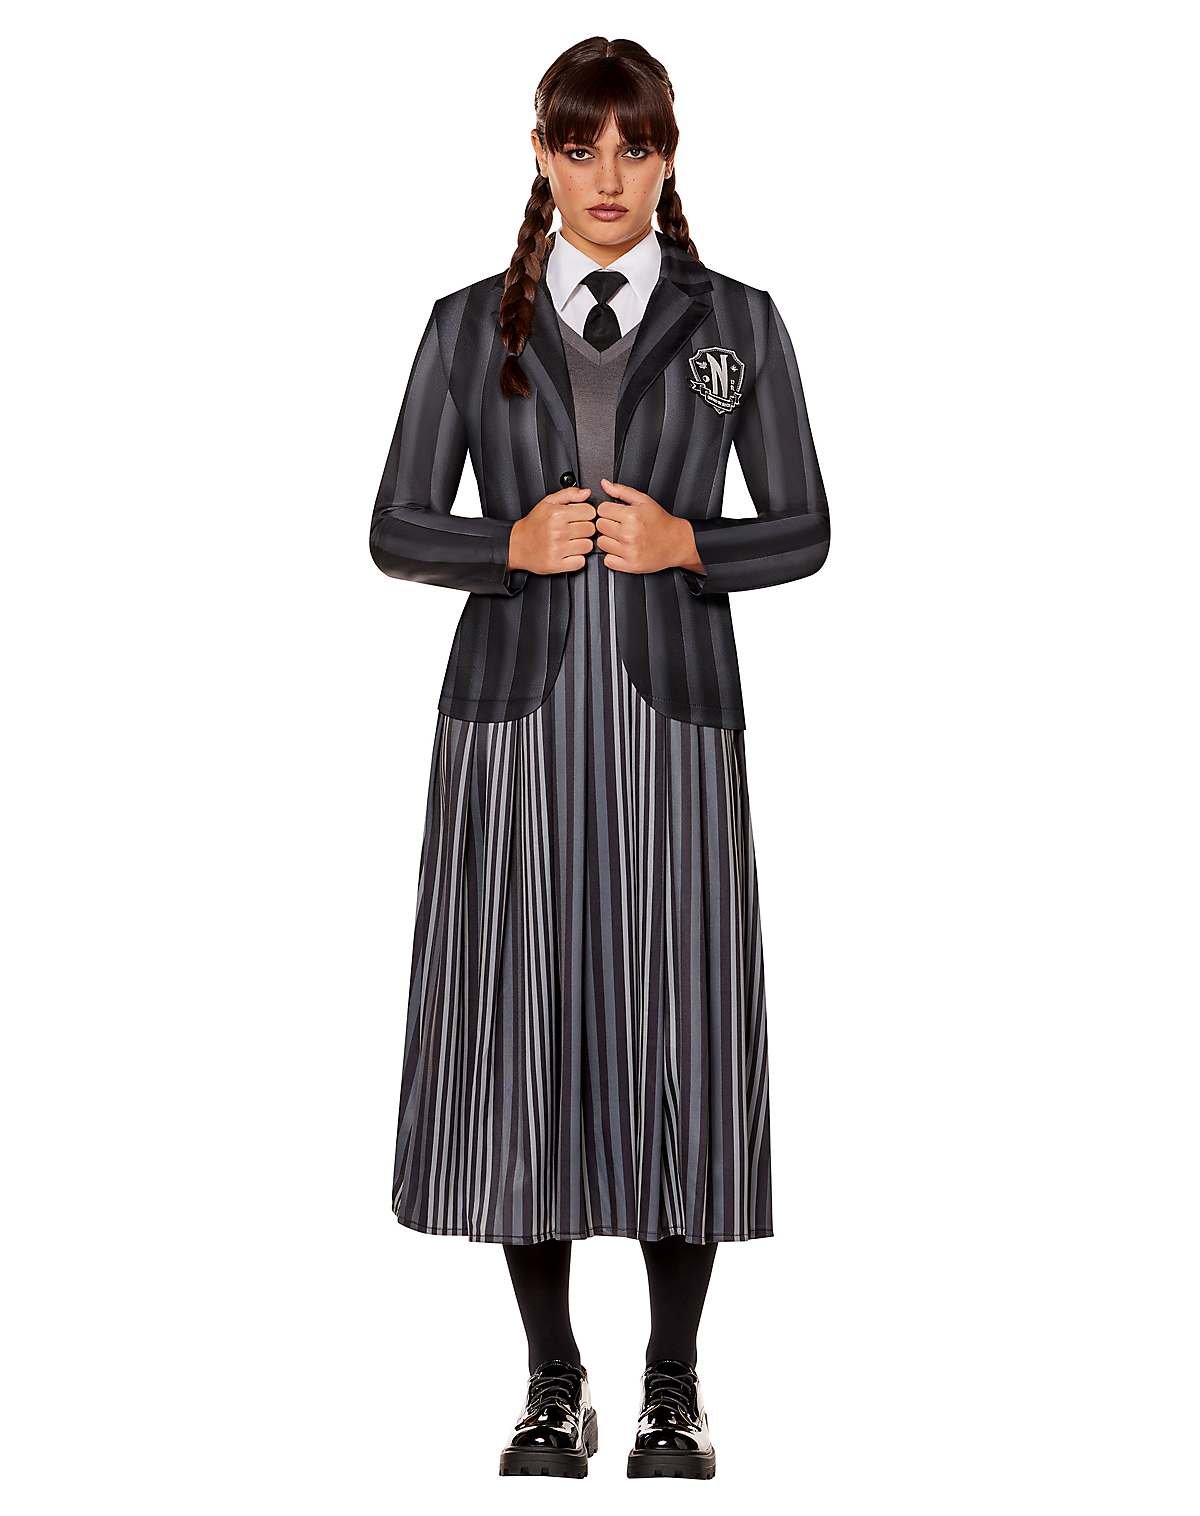 Adult Nevermore Uniform Costume - Wednesday
